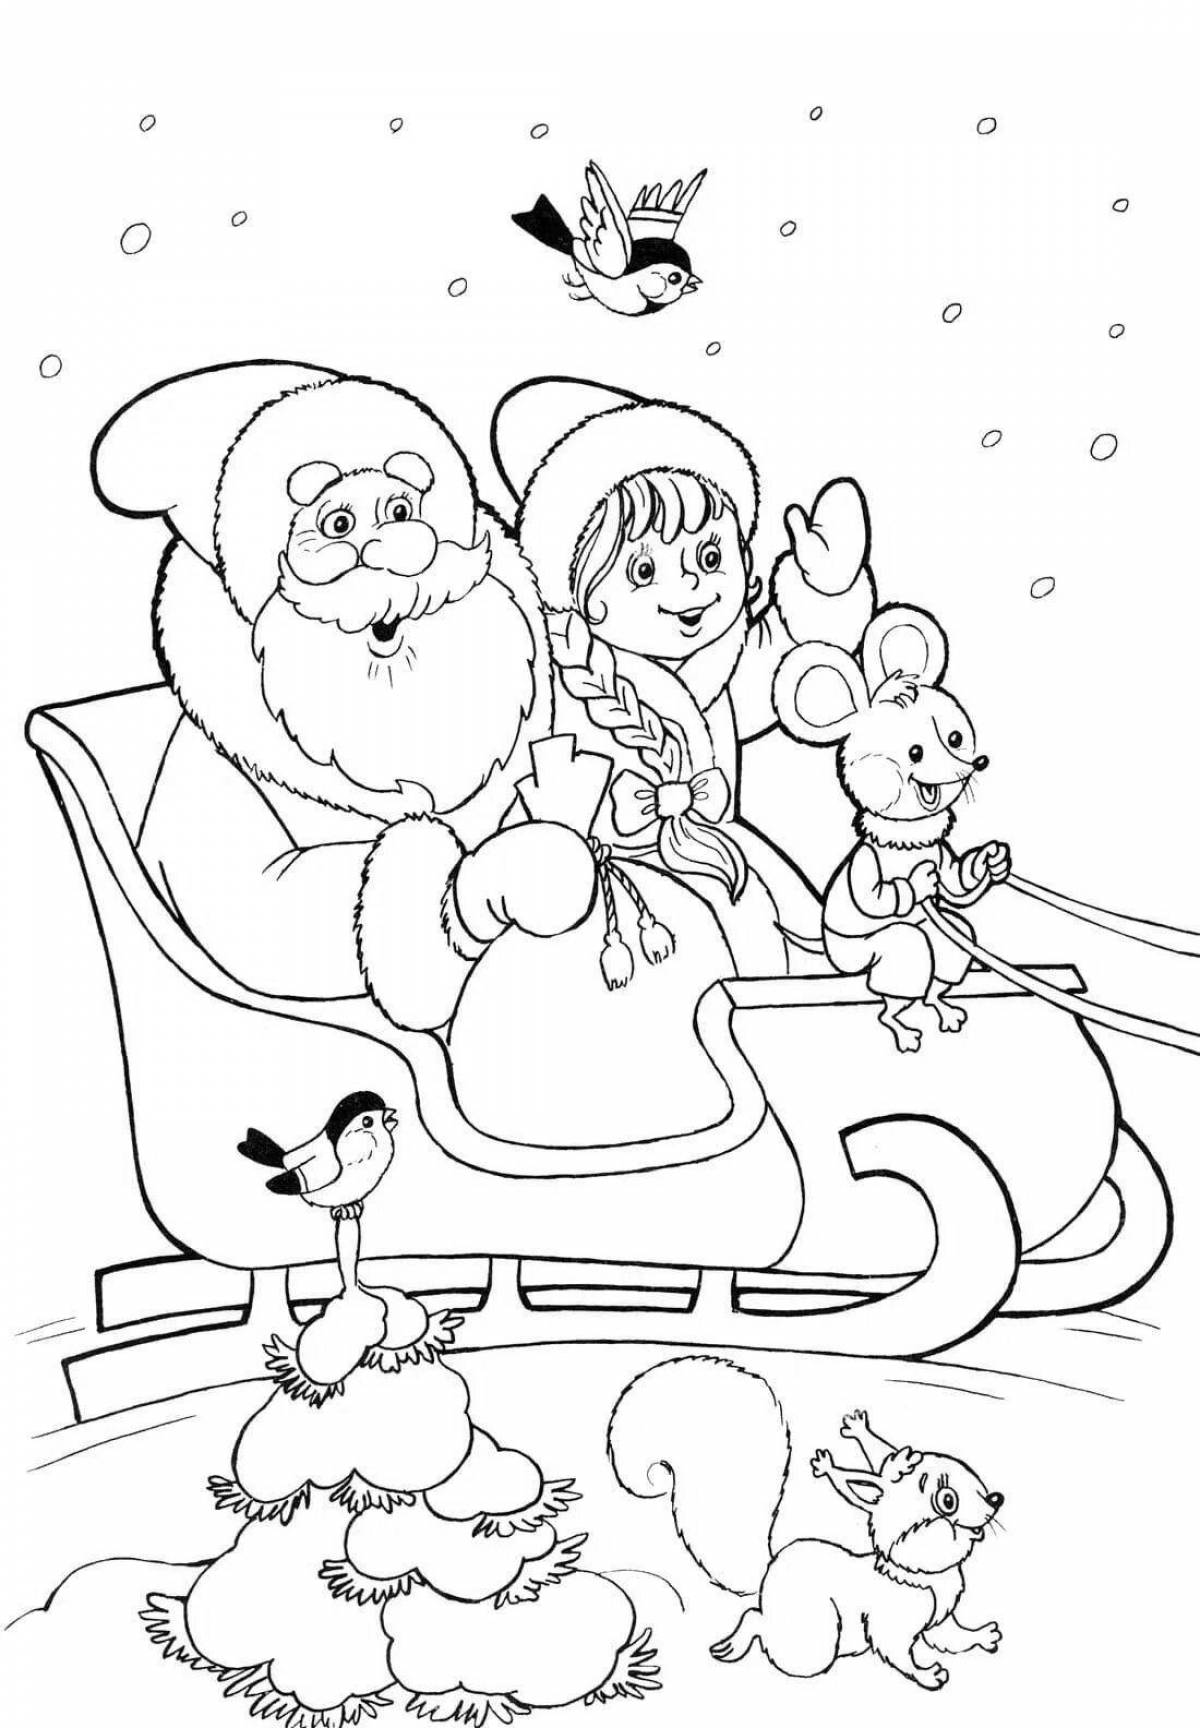 Fun coloring santa claus and animals